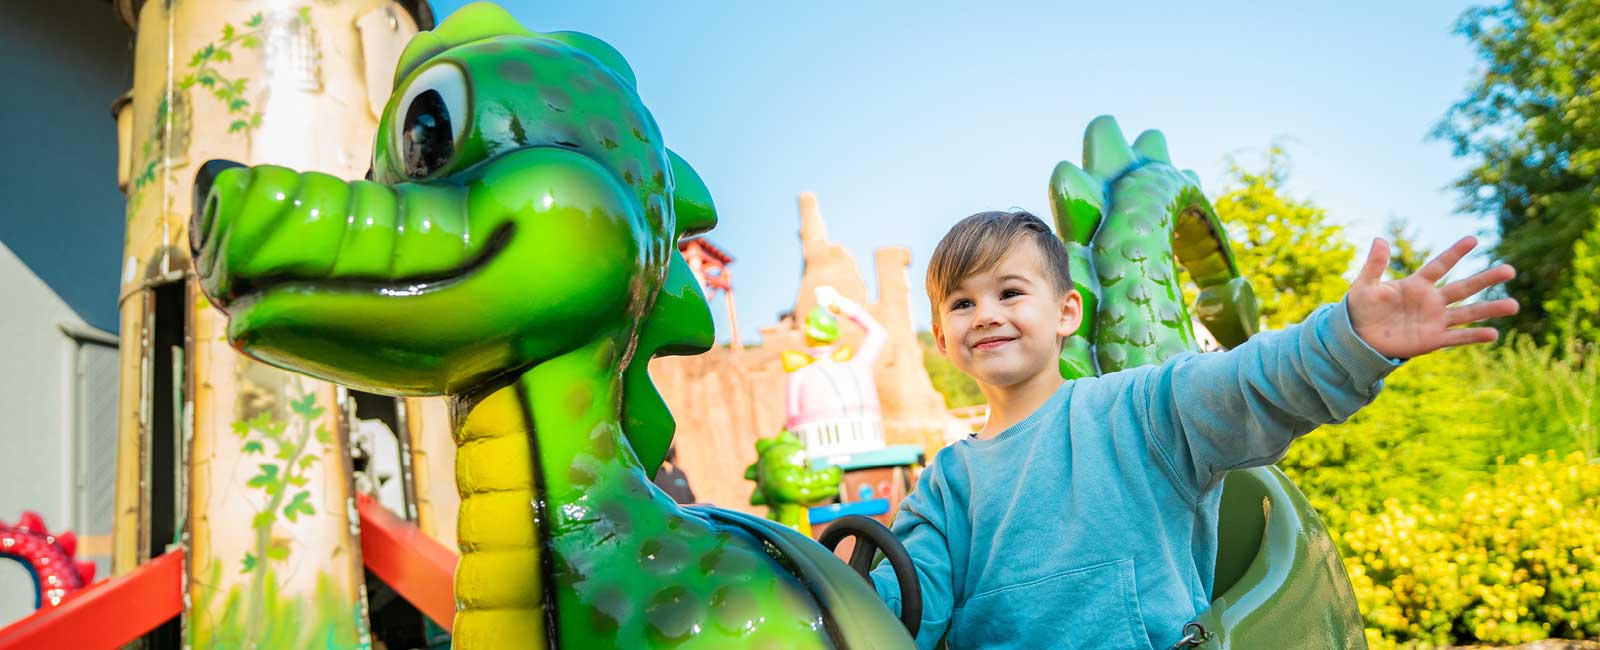 Mit einer Hand hält sich der stolze Junge am grünen Dino im Kinderkarussell fest.